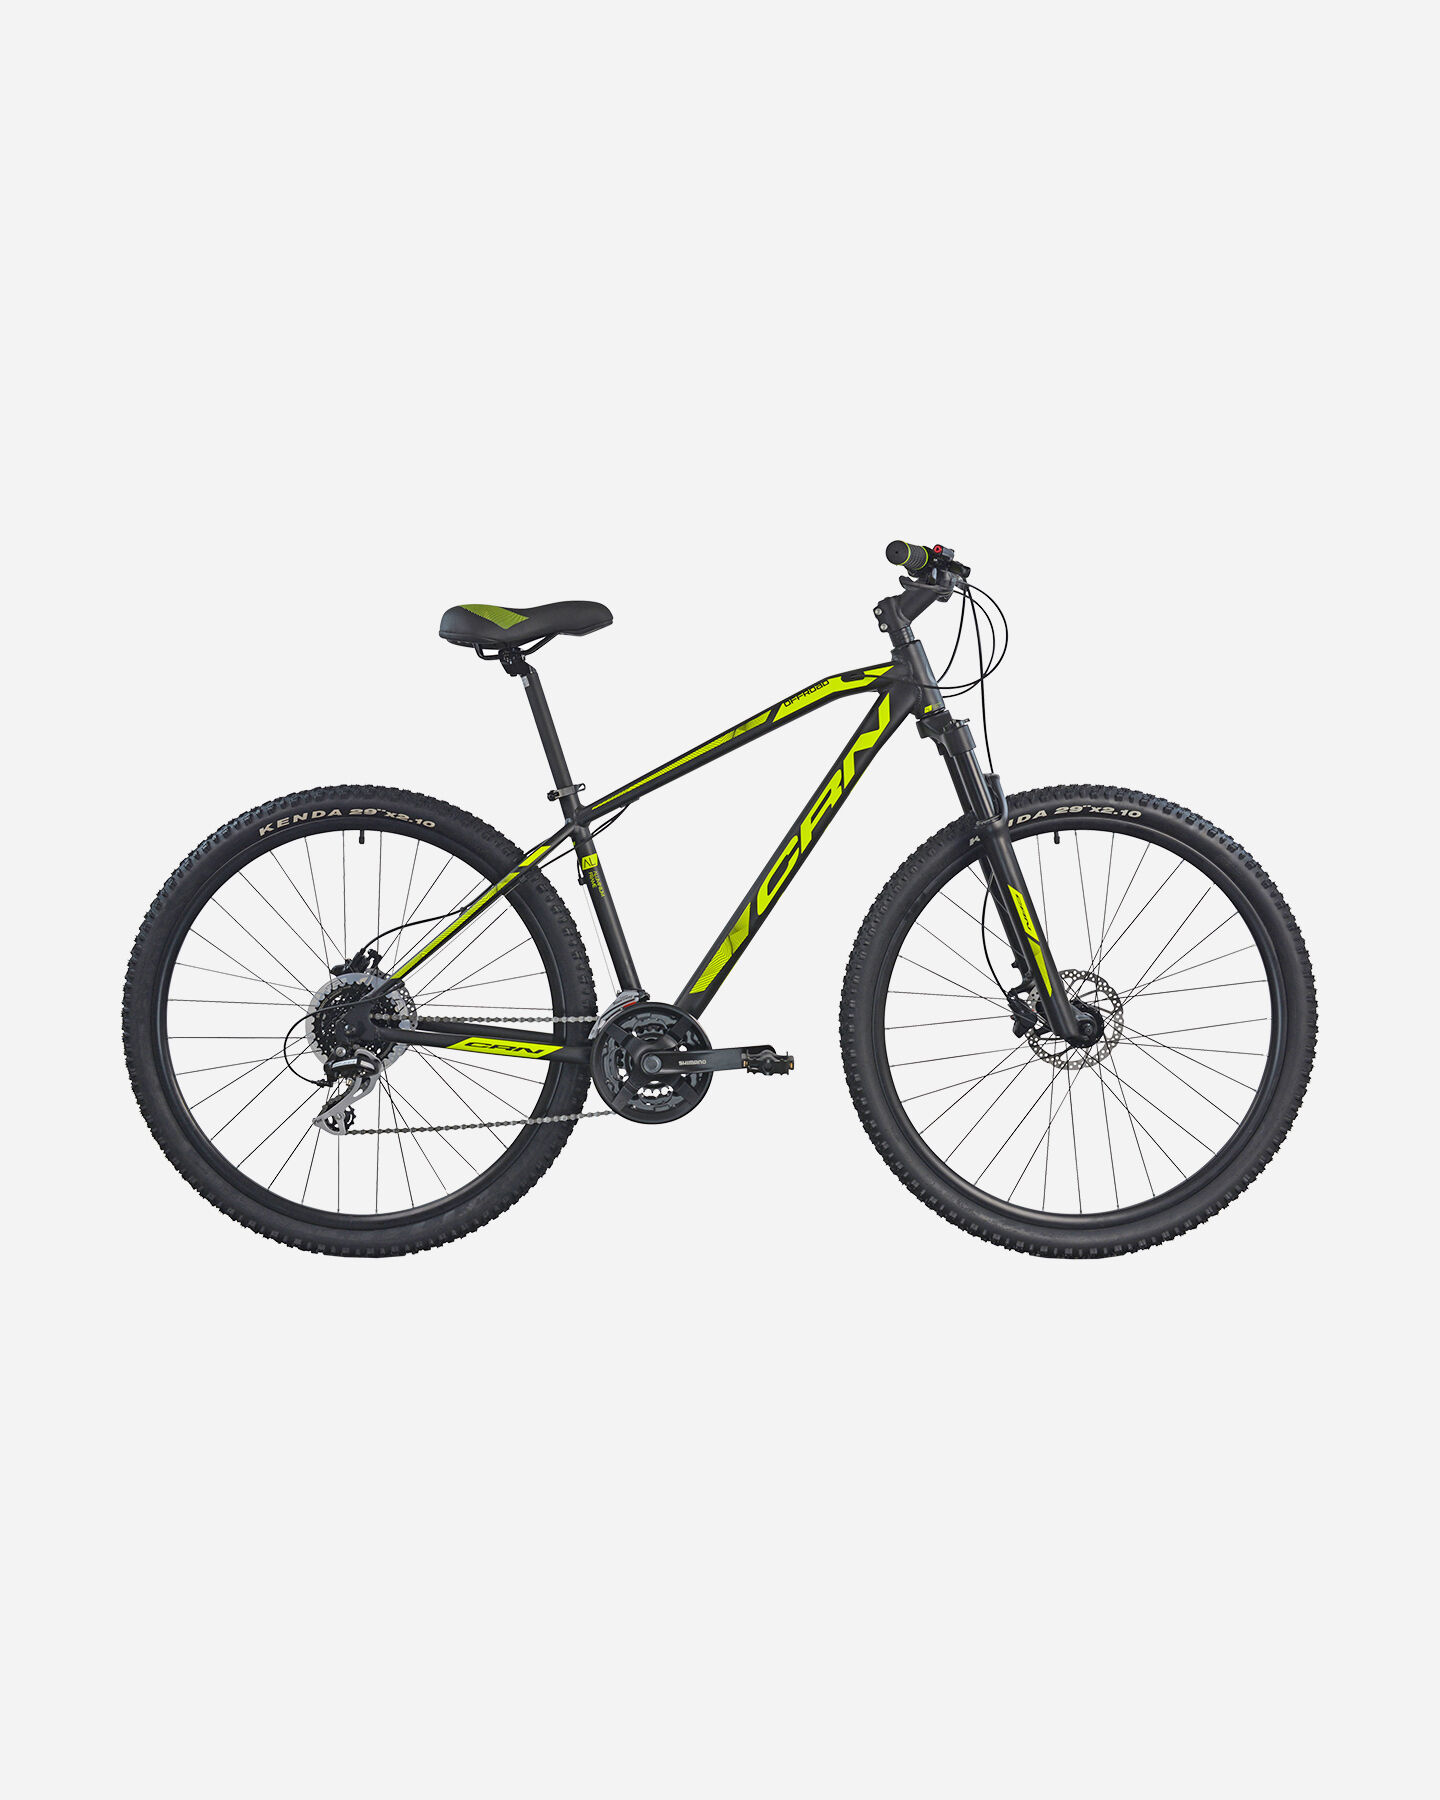  Mountain bike CARNIELLI 4000 S4113181|1|19 scatto 0